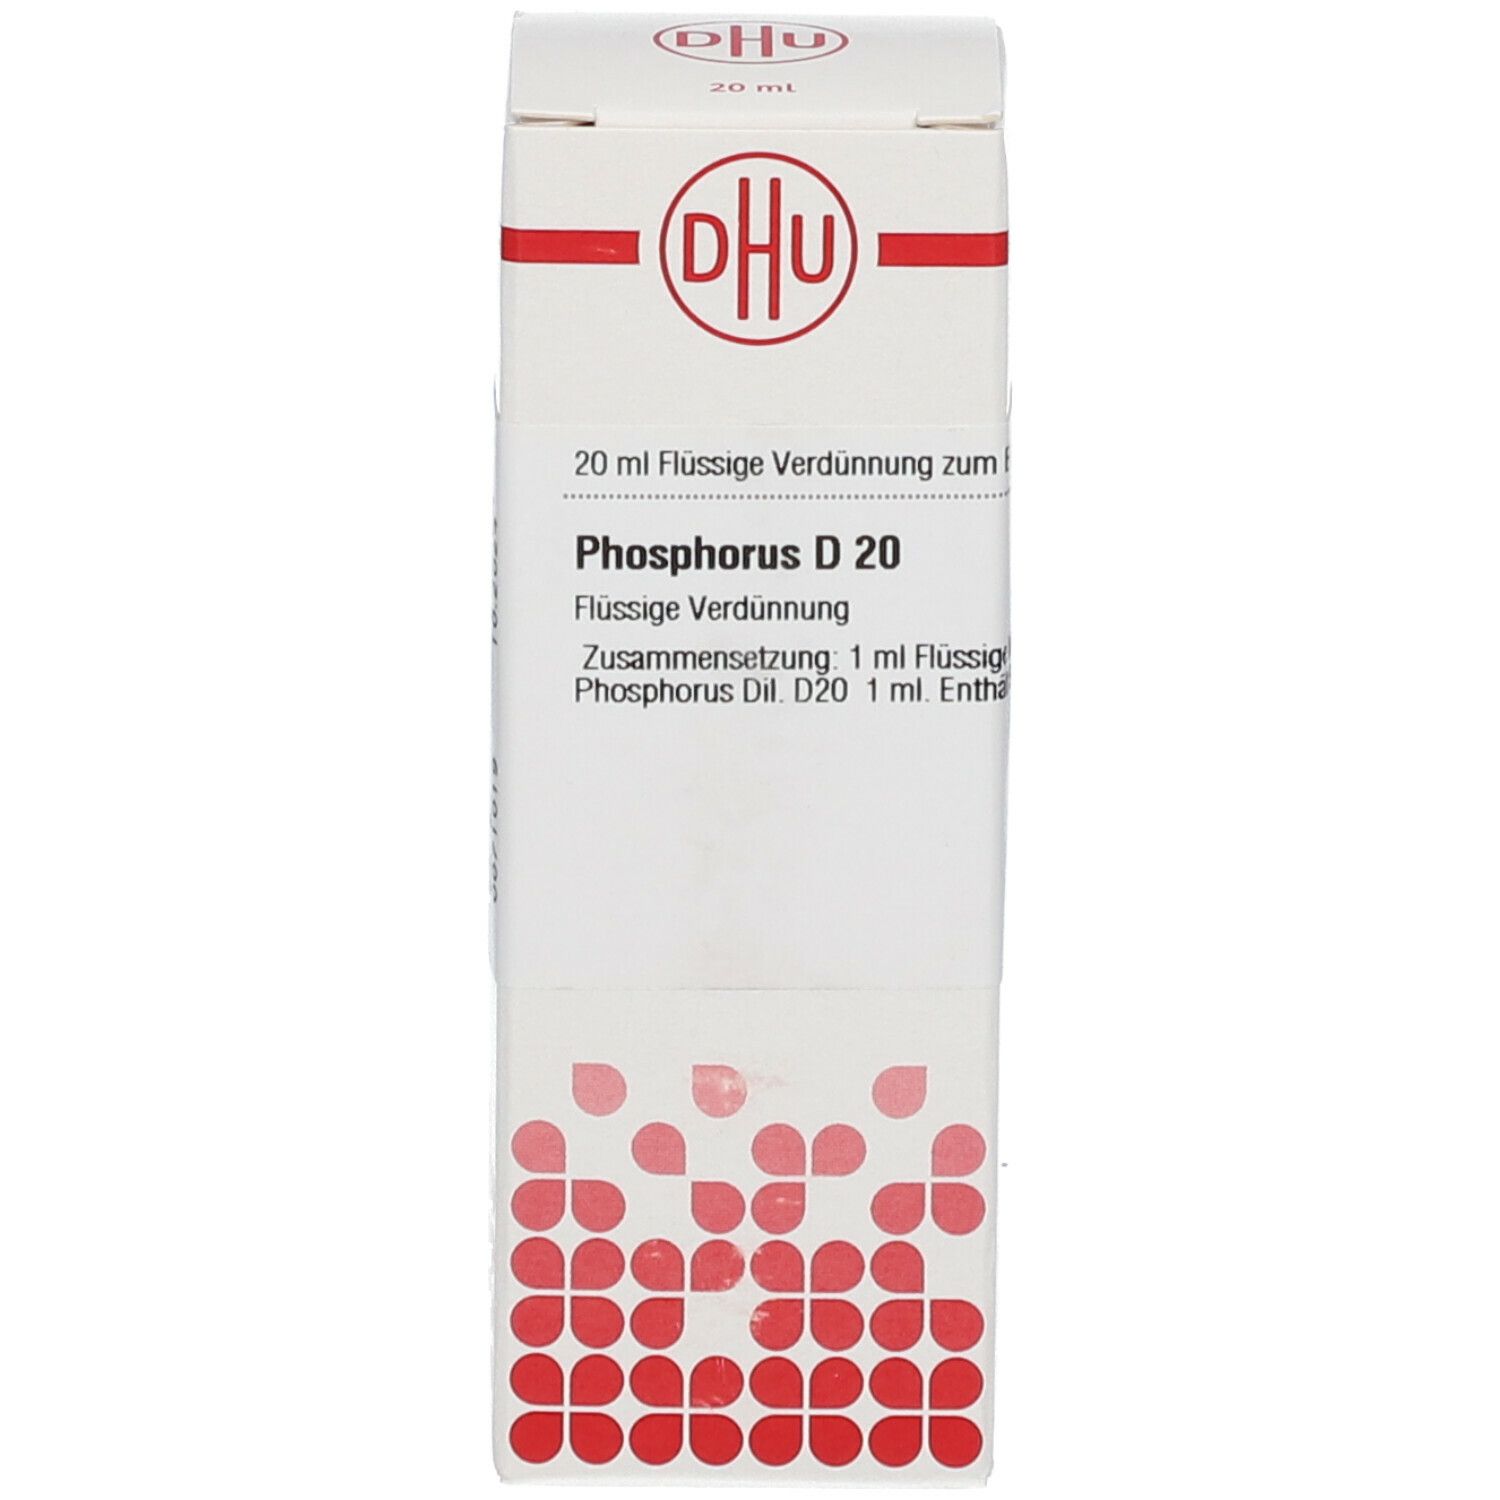 DHU Phosphorus D20